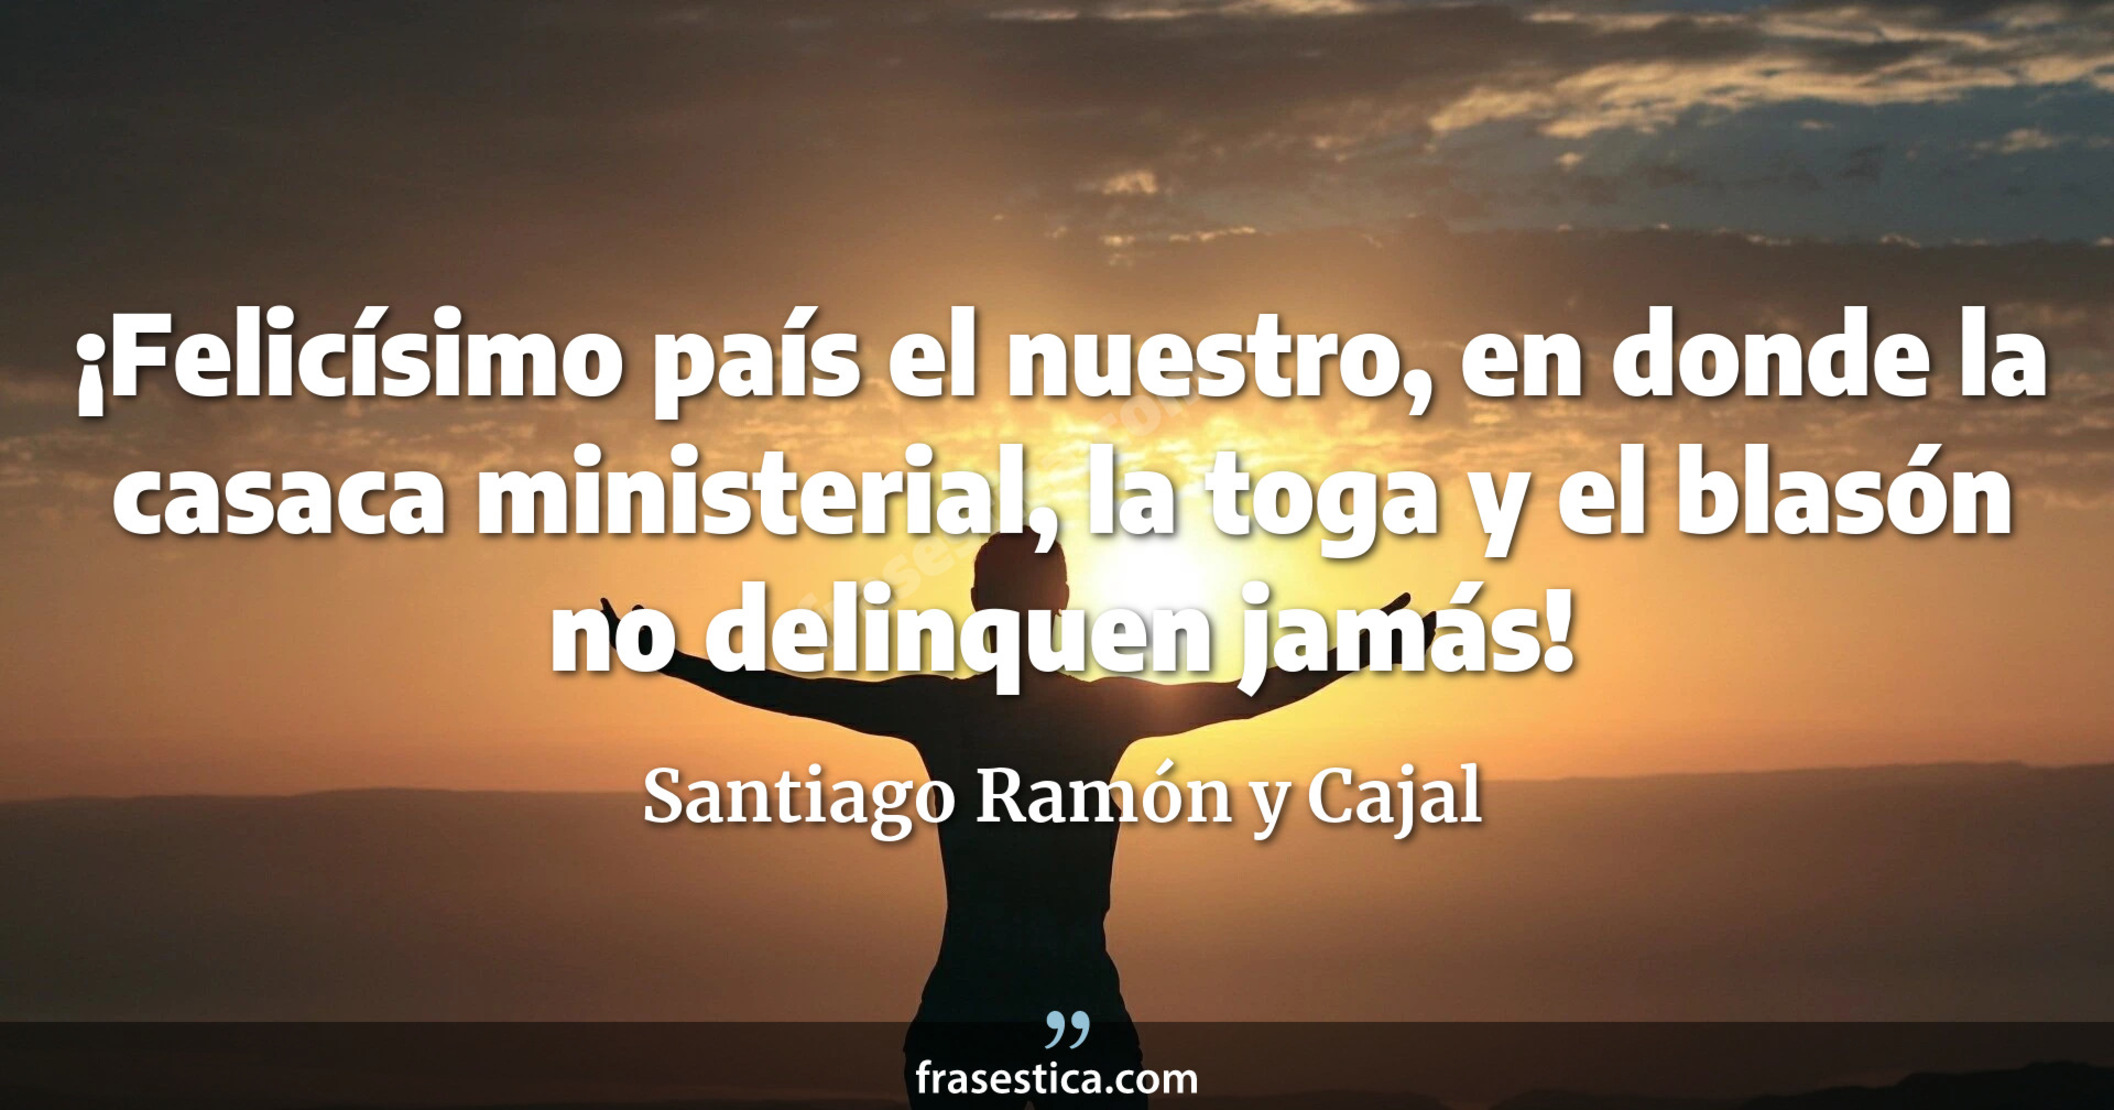 ¡Felicísimo país el nuestro, en donde la casaca ministerial, la toga y el blasón no delinquen jamás! - Santiago Ramón y Cajal